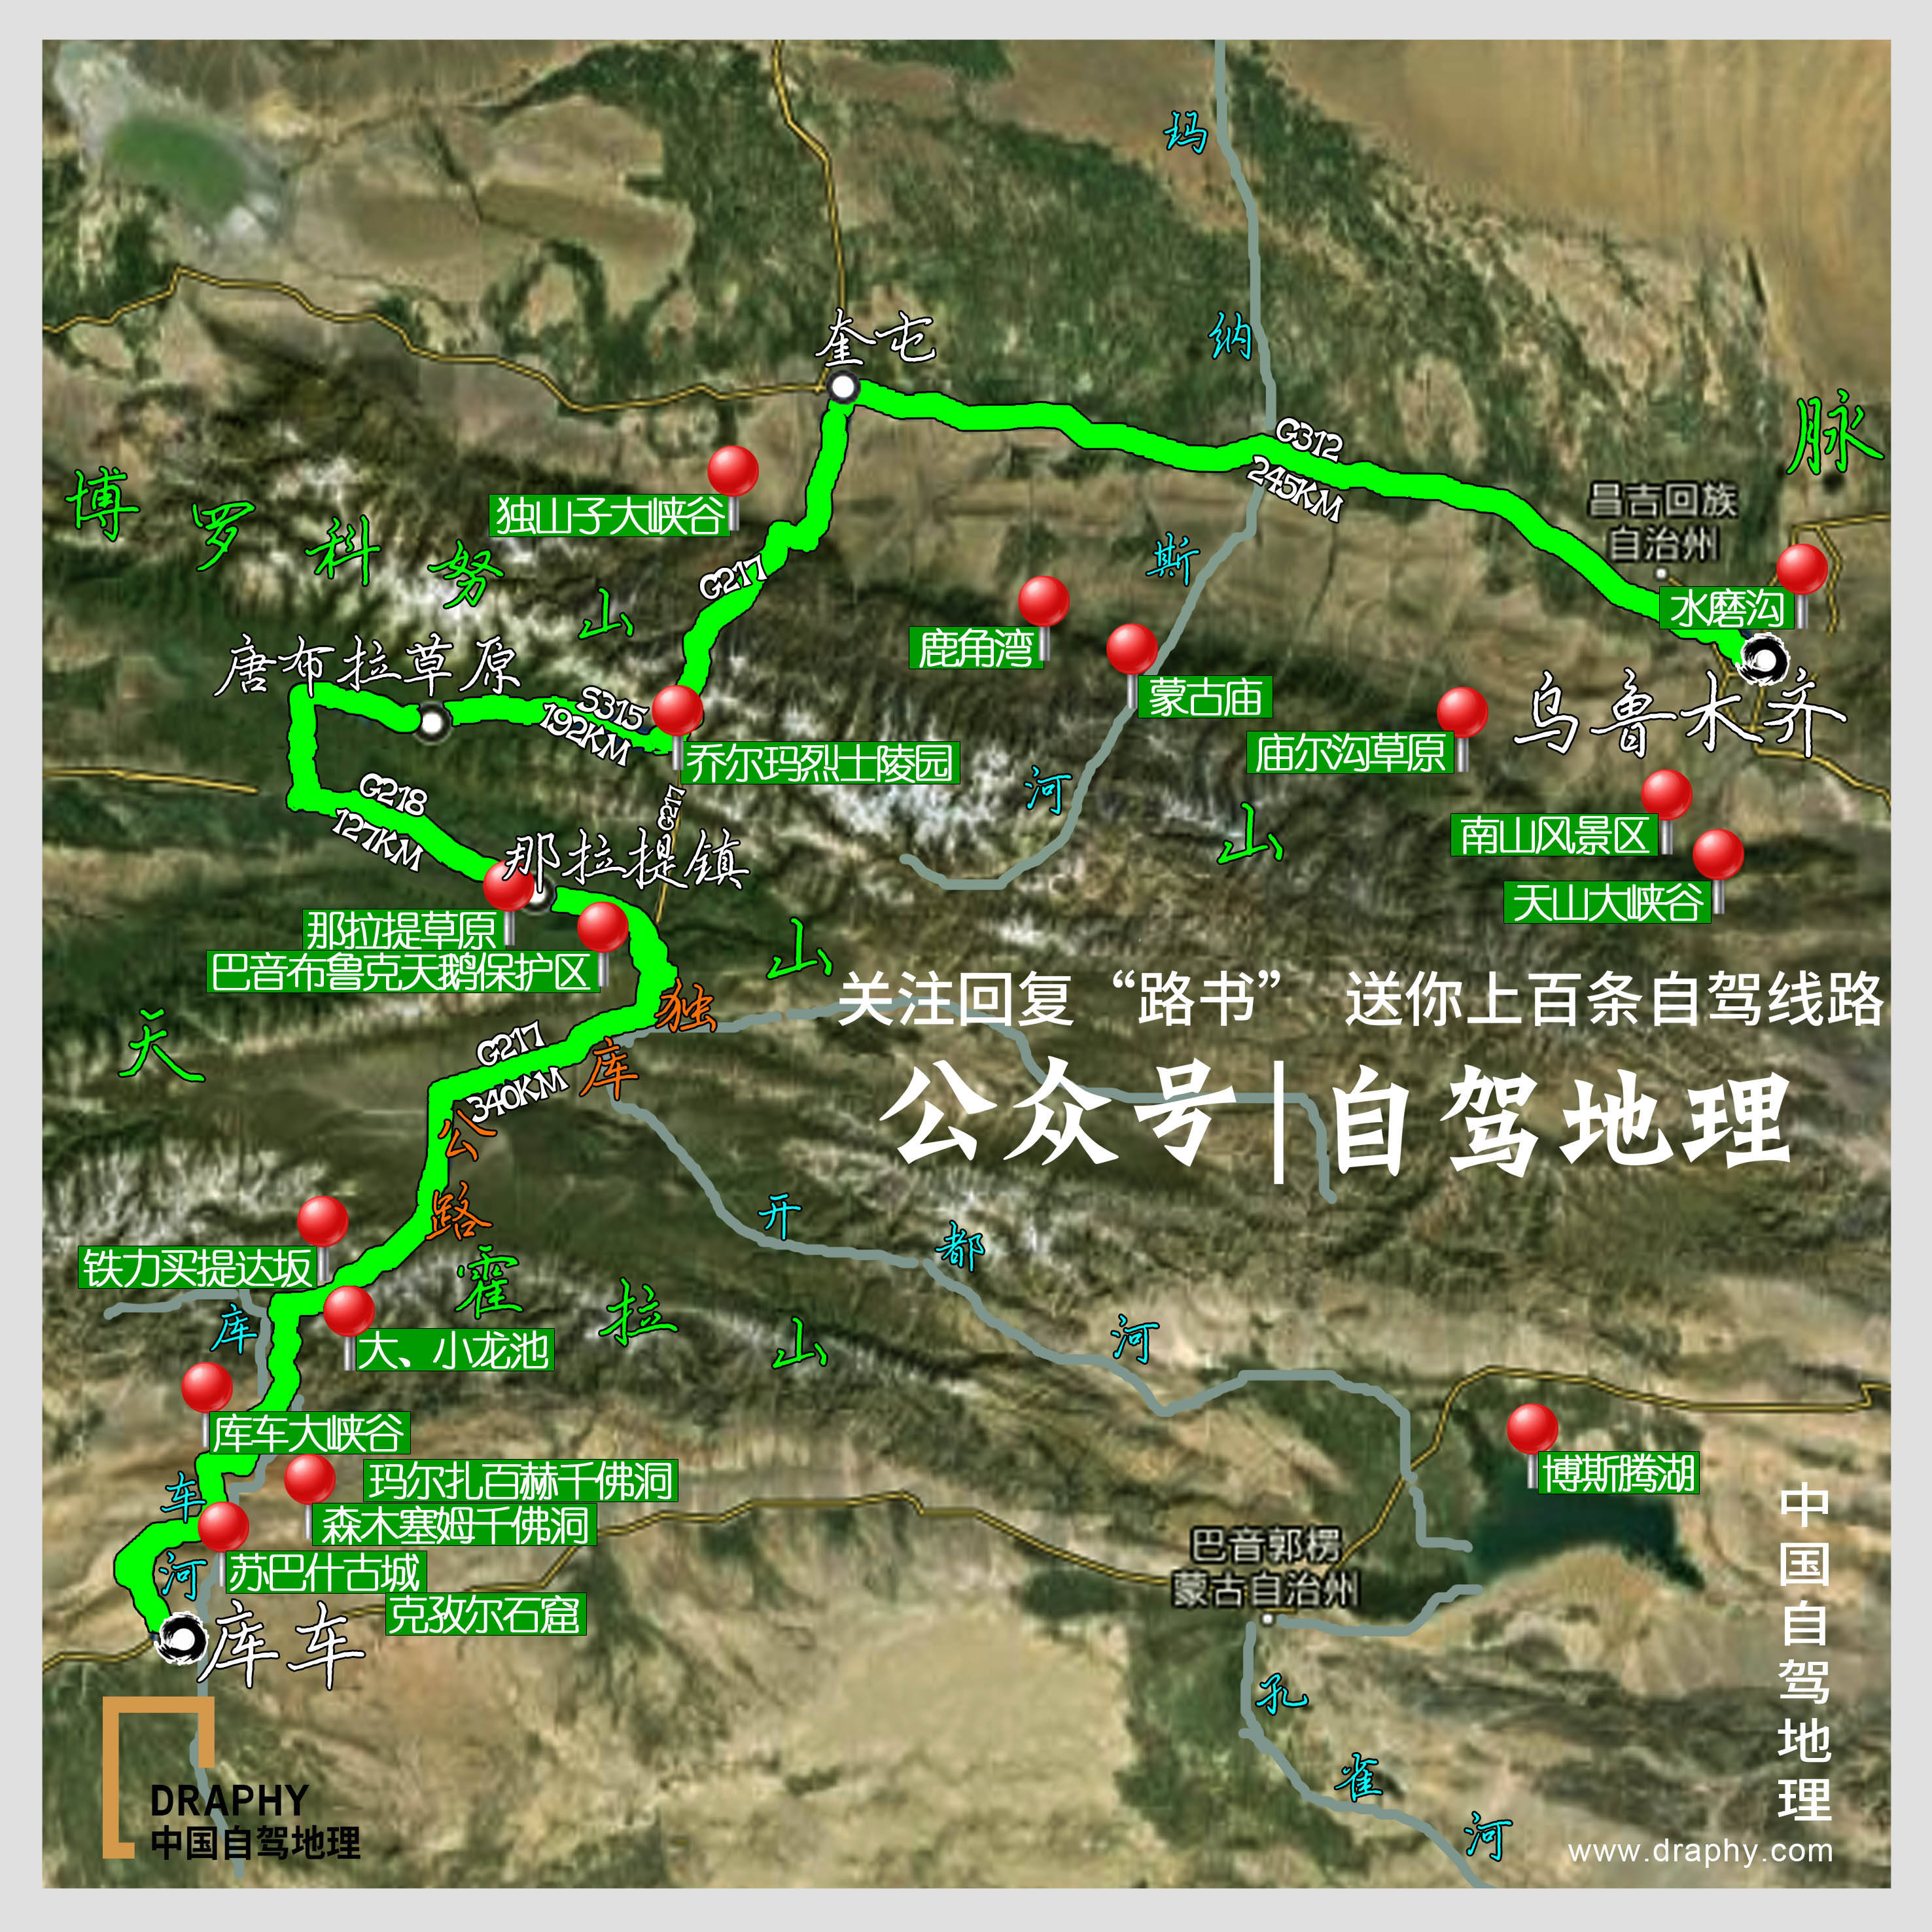 最强新疆12天环线自驾攻略!玩转独库公路 沙漠公路 罗布泊大海道!